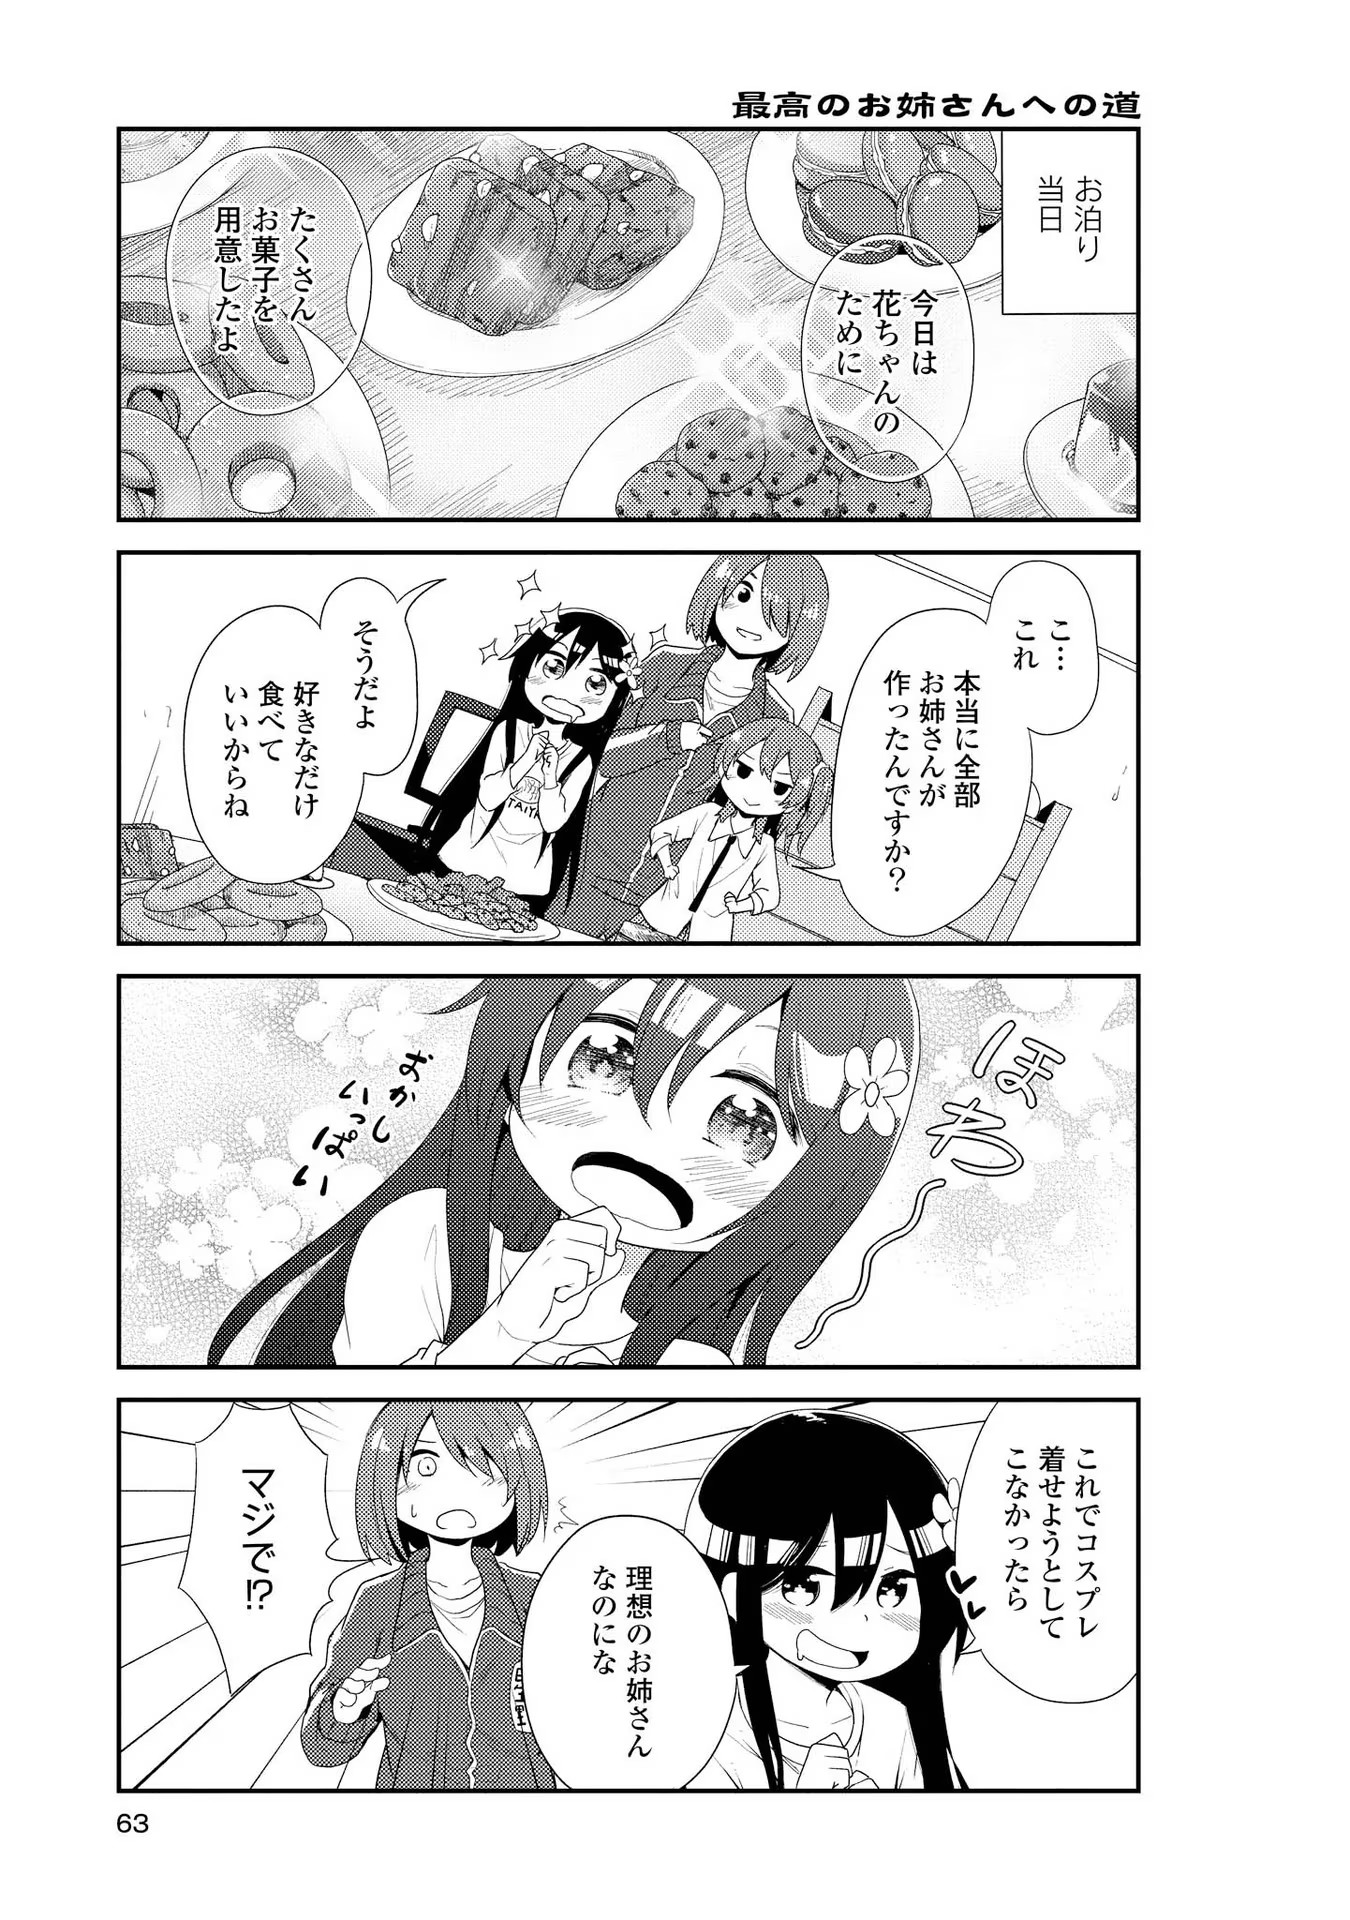 Watashi ni Tenshi ga Maiorita! - Chapter 4 - Page 5